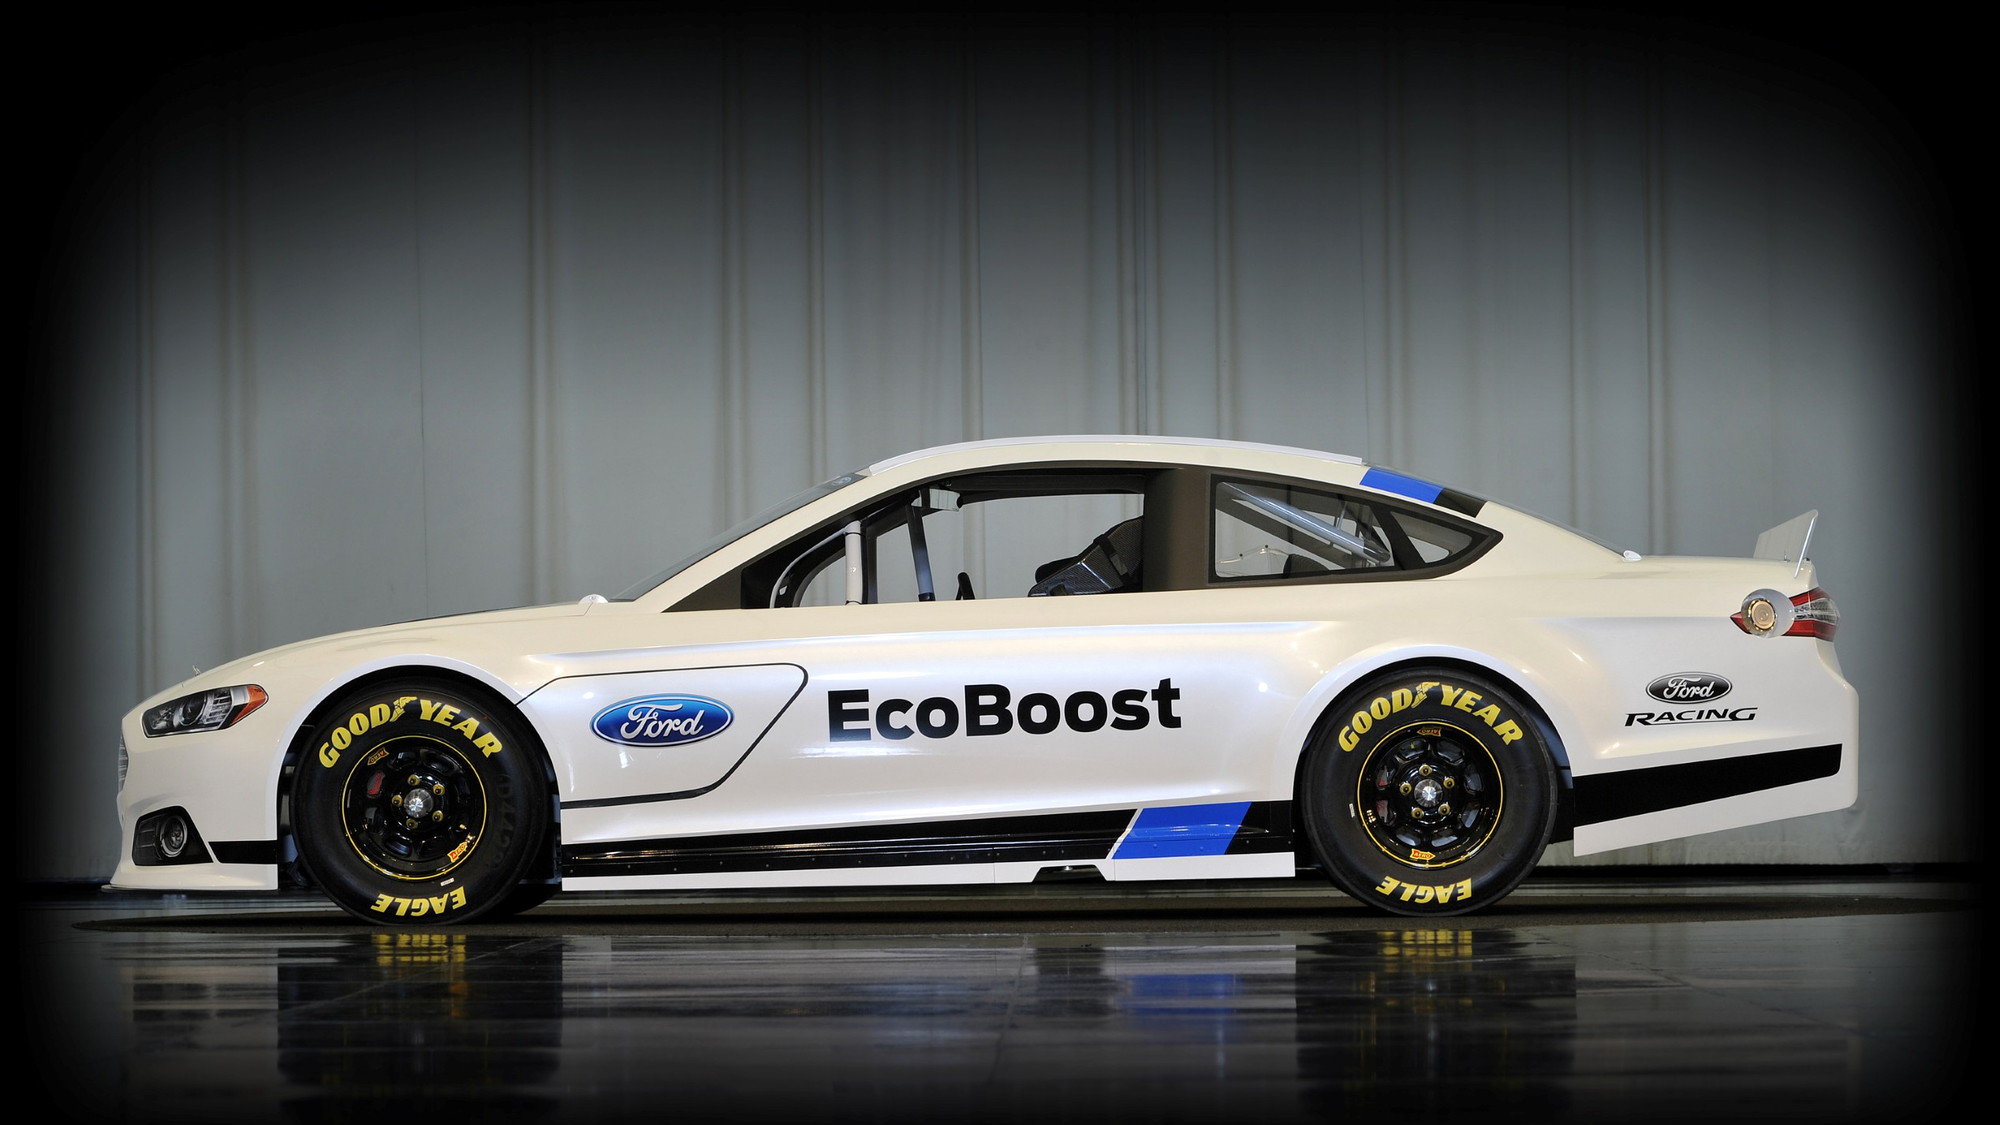 2013 Ford Fusion NASCAR Sprint Cup race car